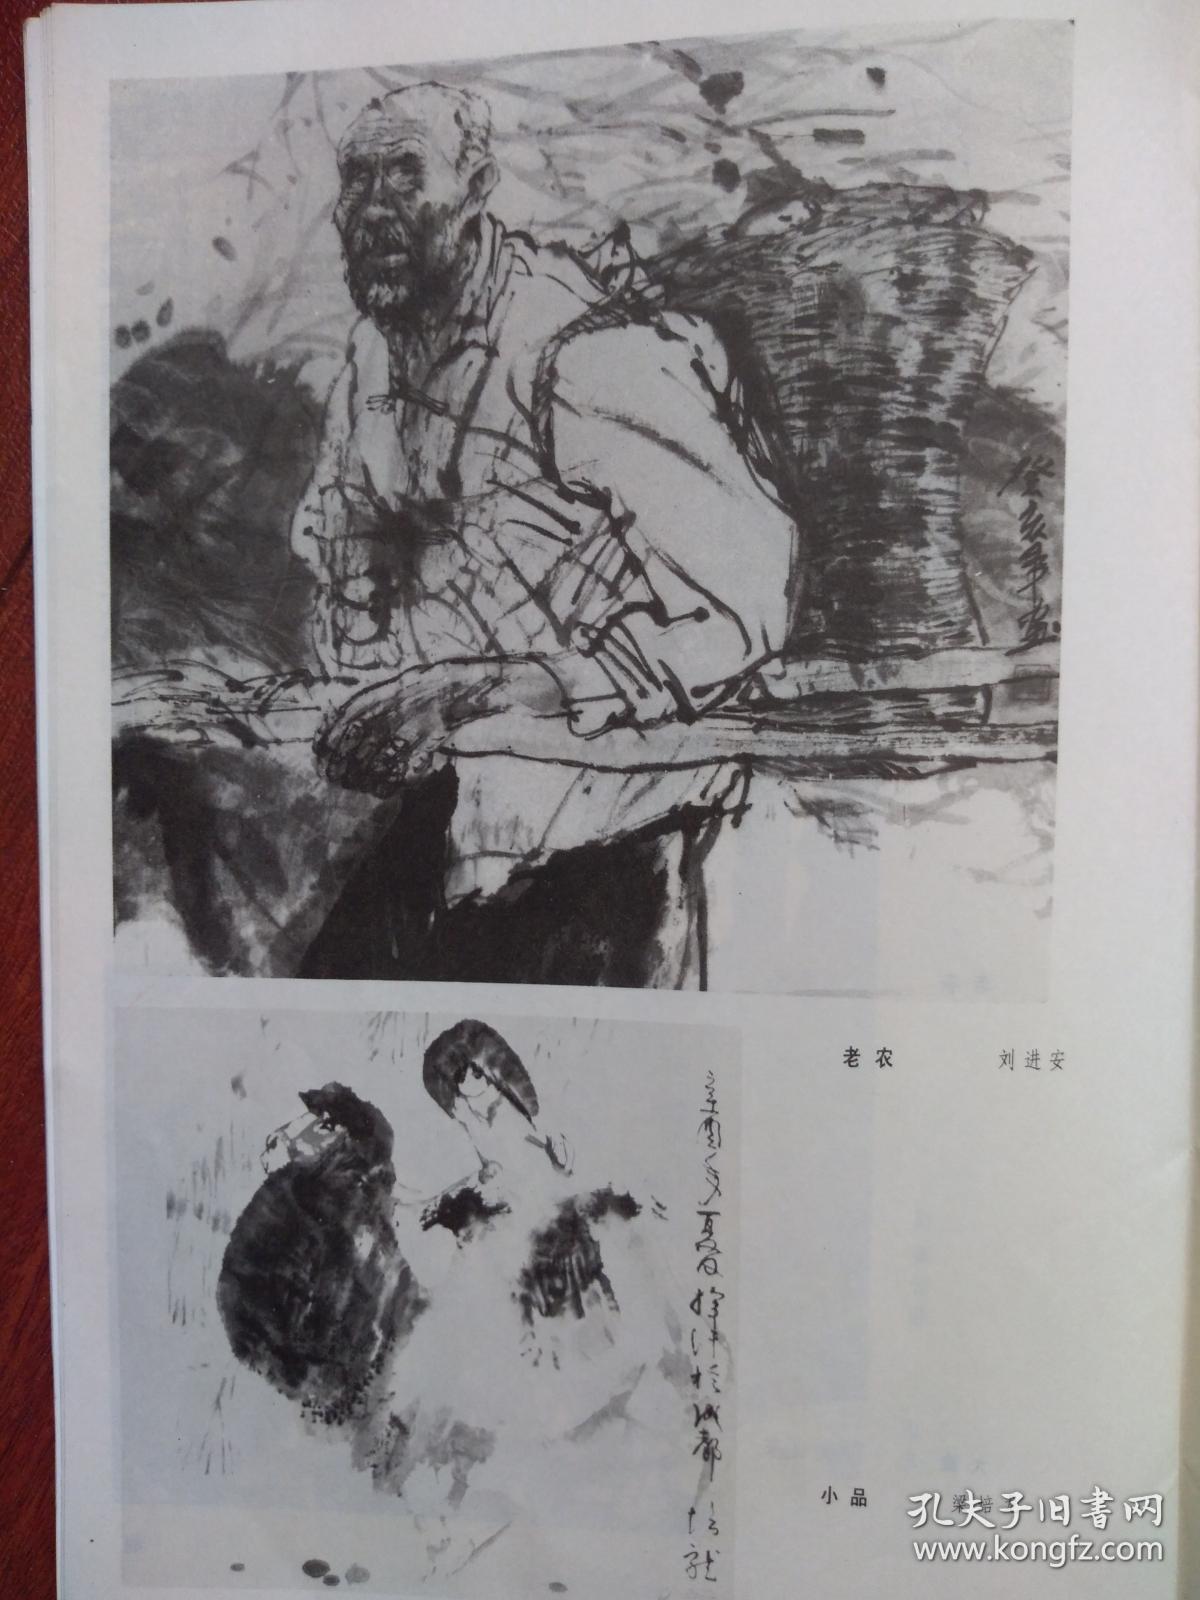 美术插页（单张）刘进安国画三幅《老农》《大娘》，梁培龙国画《小品》